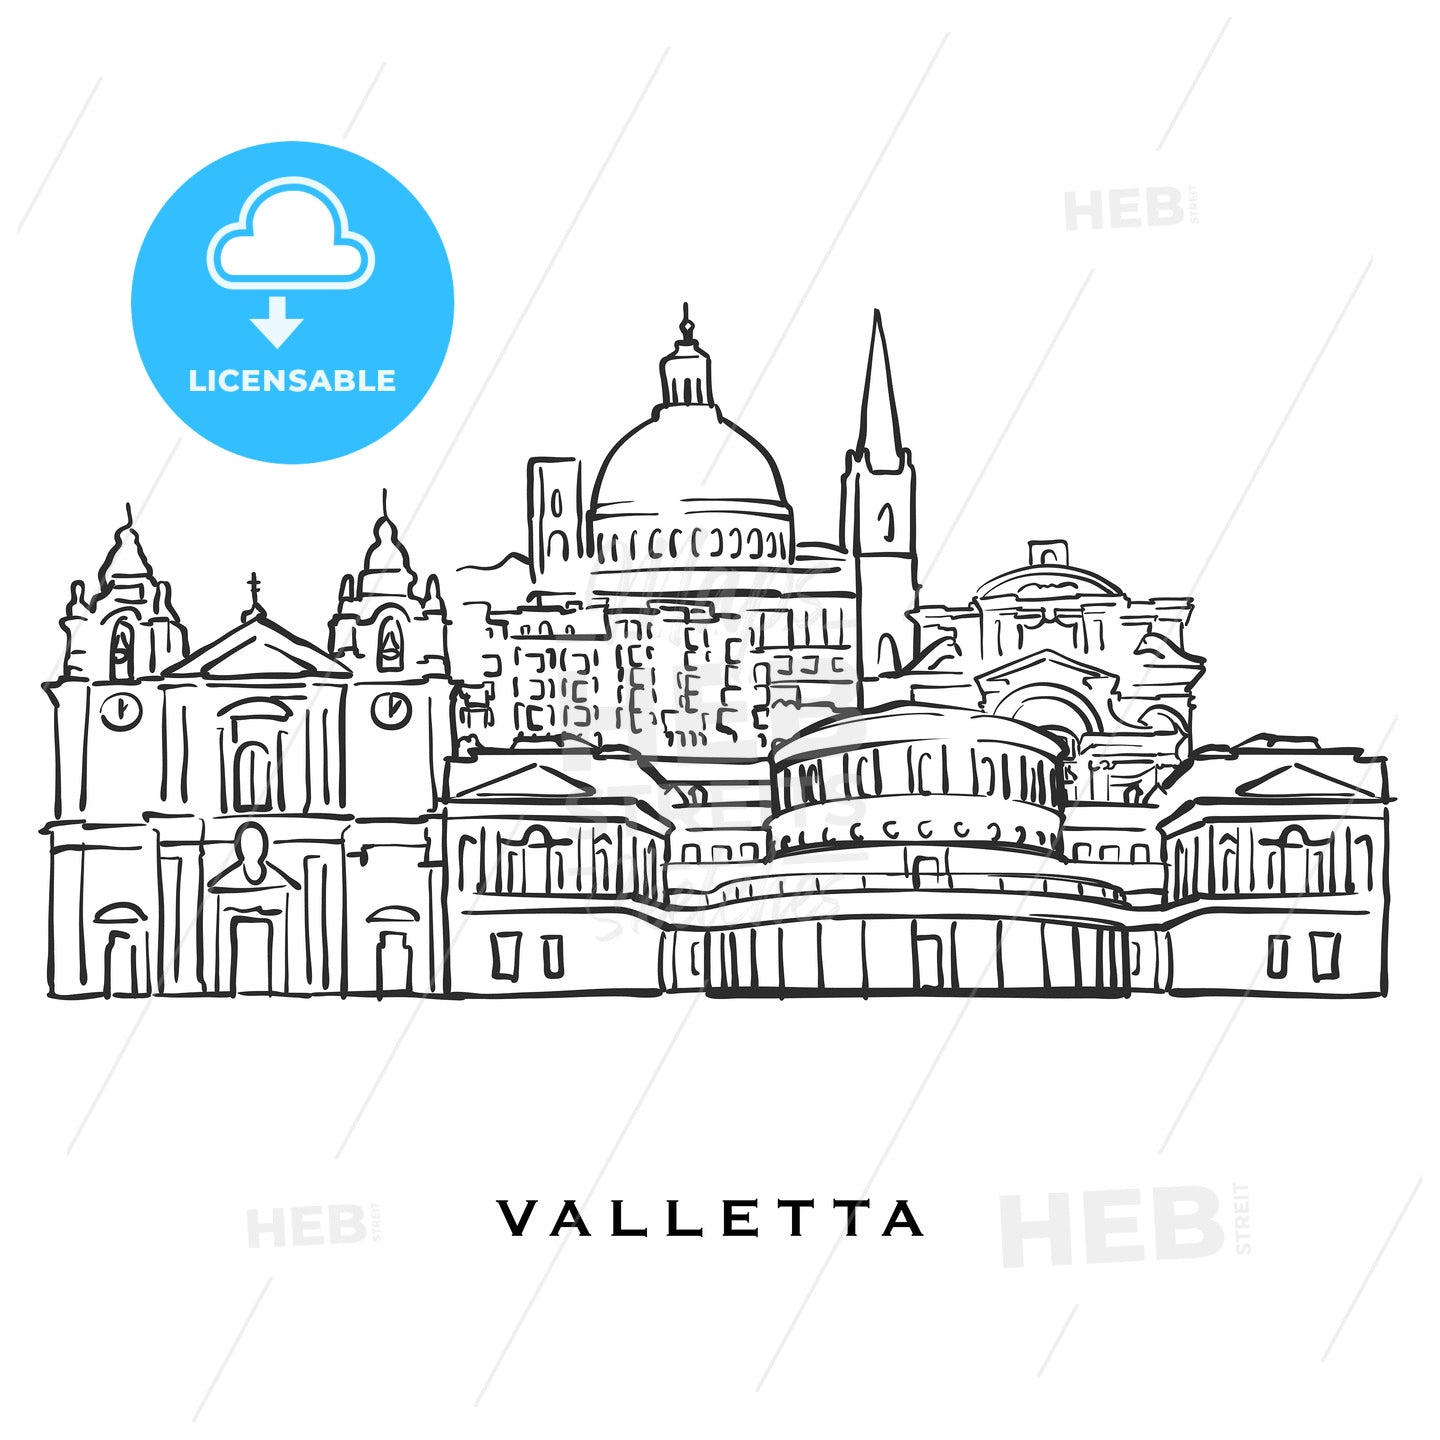 Valletta Malta famous architecture – instant download